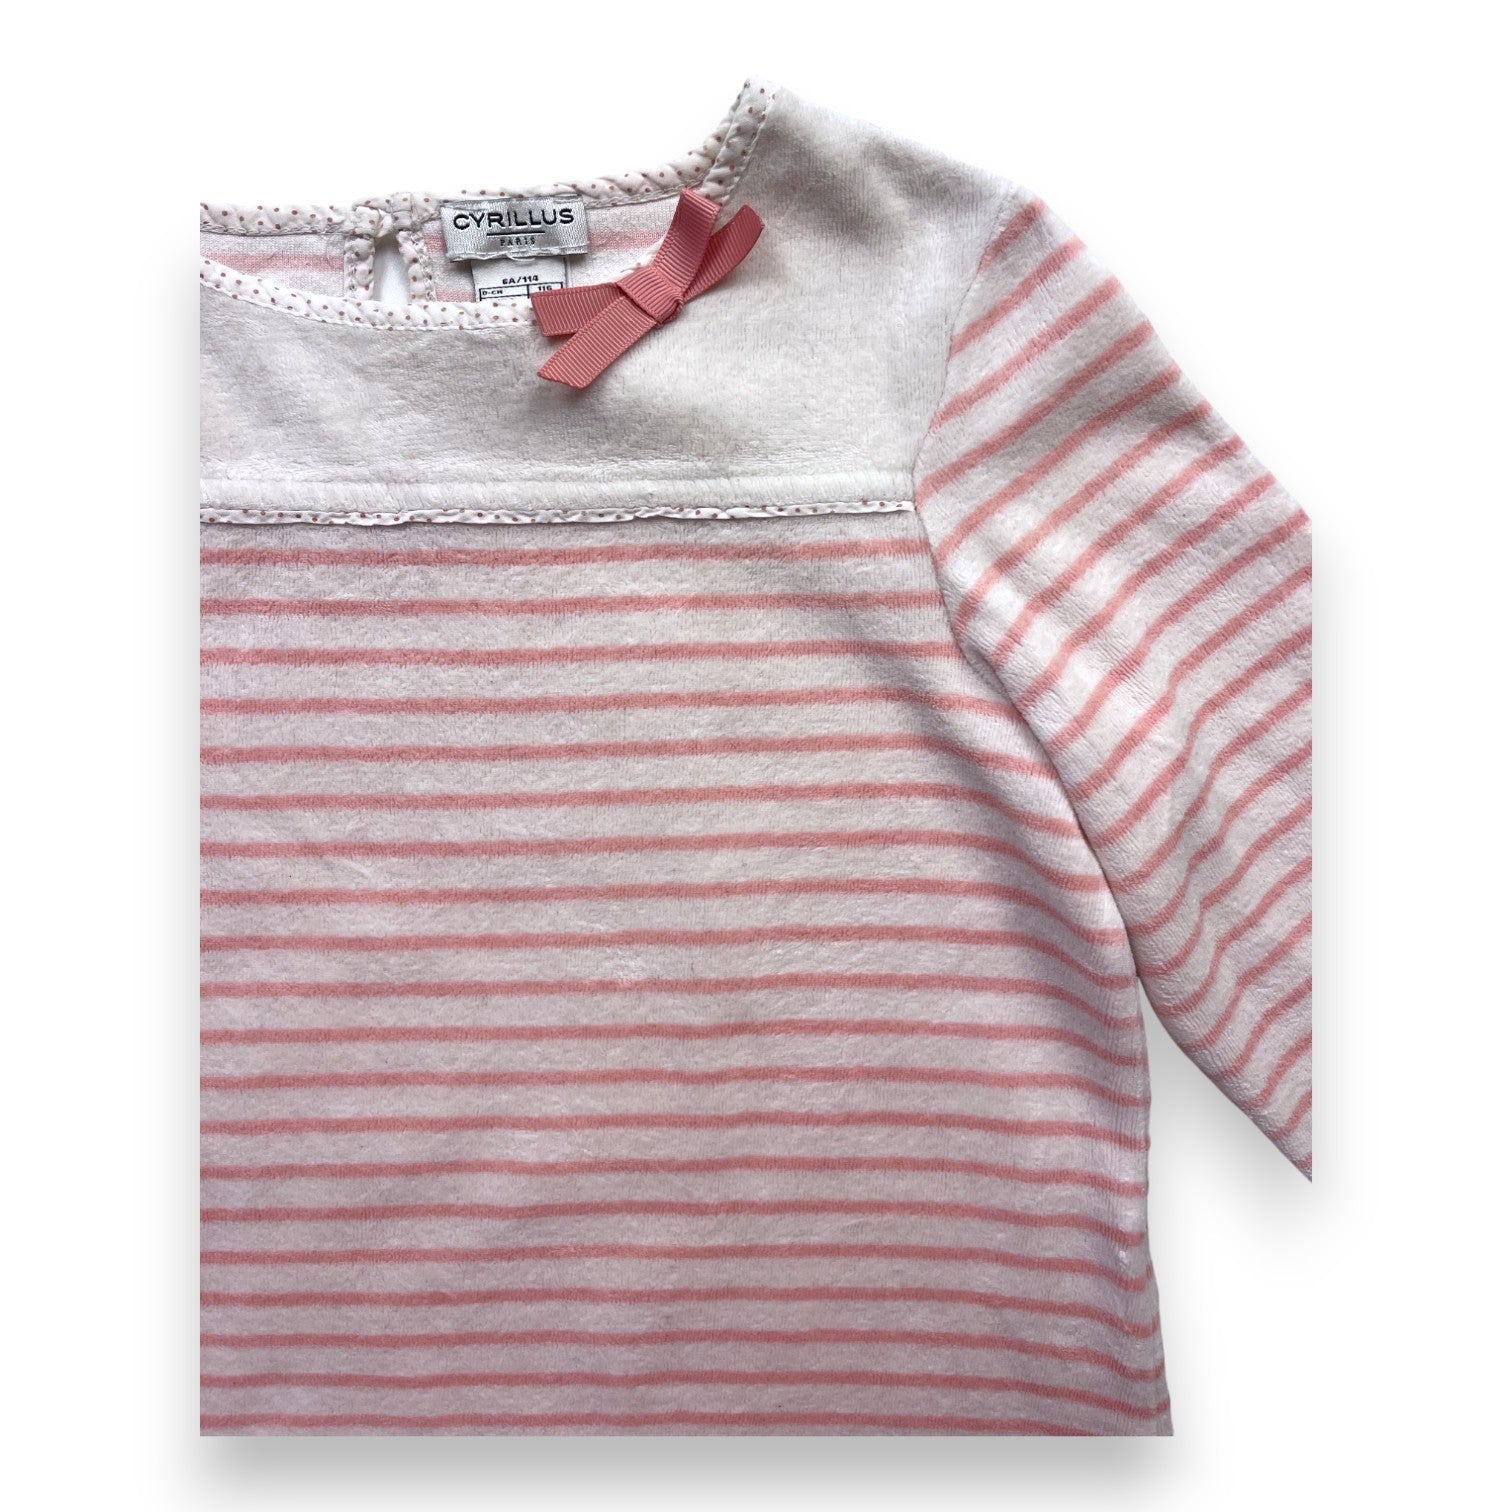 CYRILLUS - Haut de pyjama en velours rayé rose et blanc - 6 ans